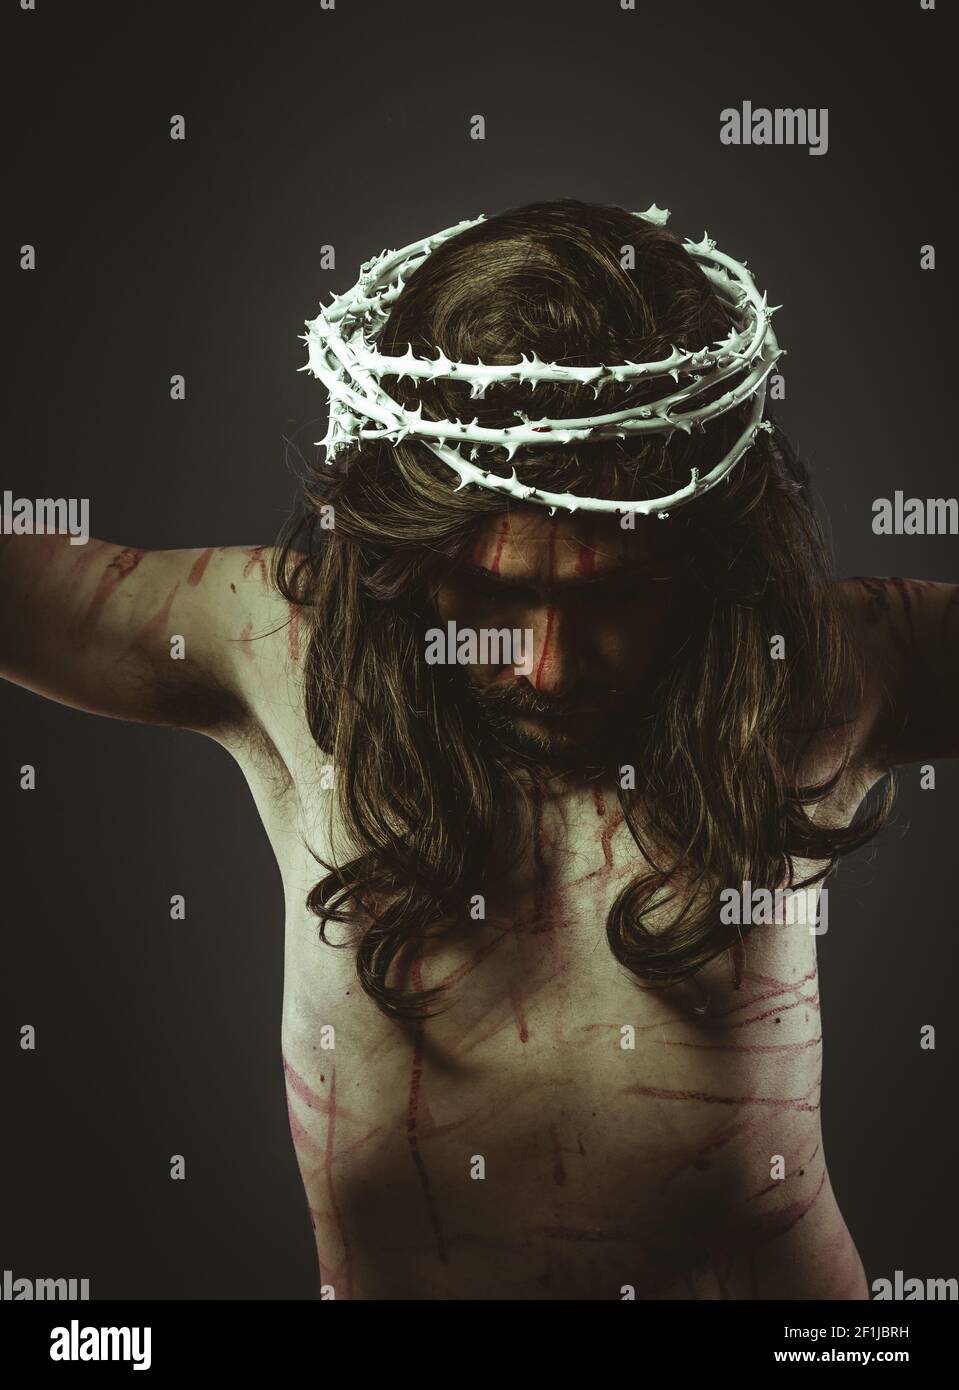 Gesù cristo, rappresentazione del Calvario sulla croce con corona di spine e ferite, fede e religione Foto Stock